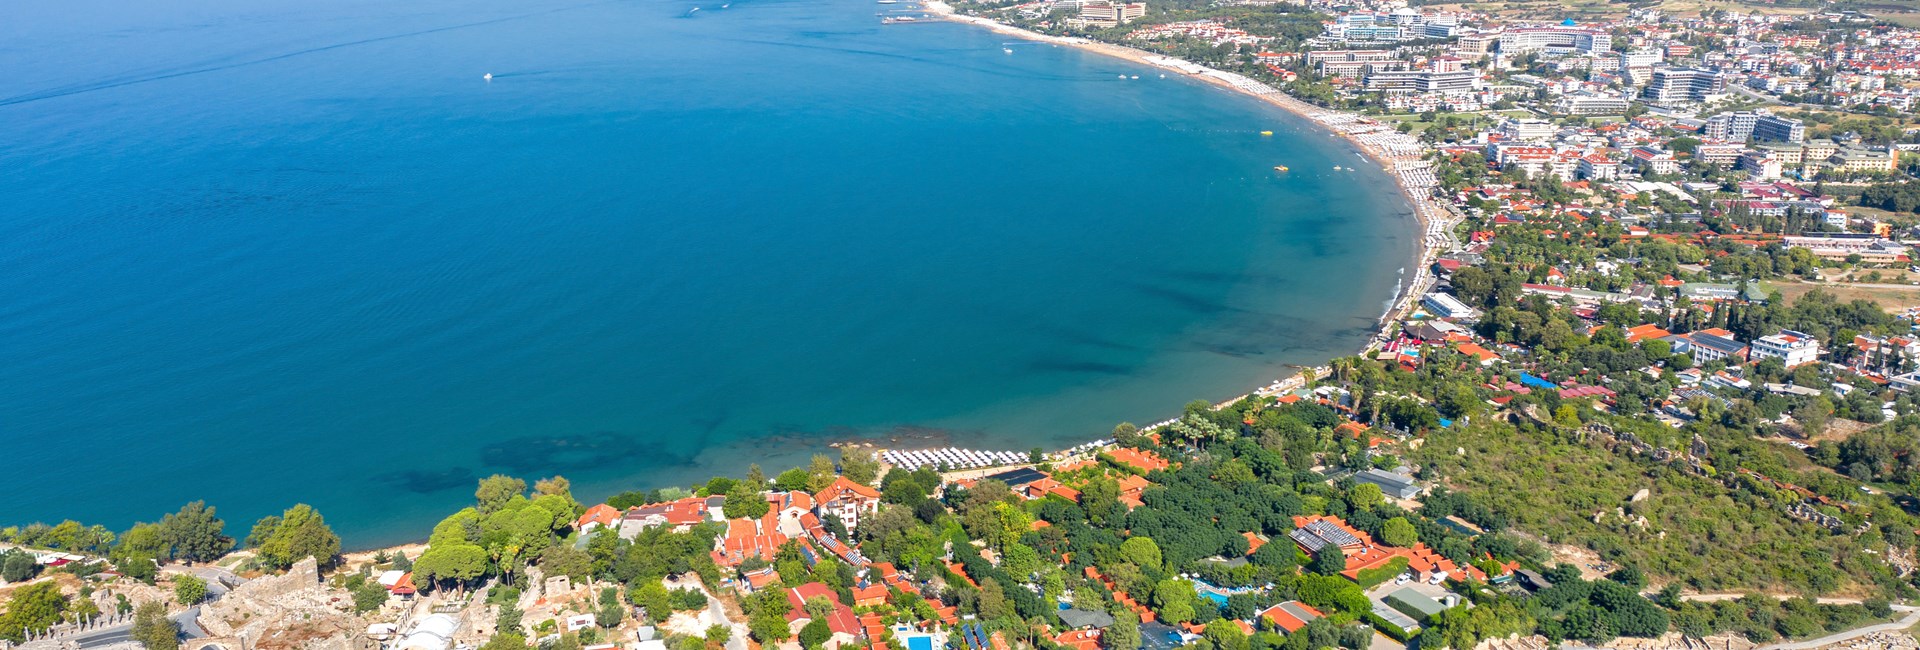 aerial view of Easter beach Side in Antalya